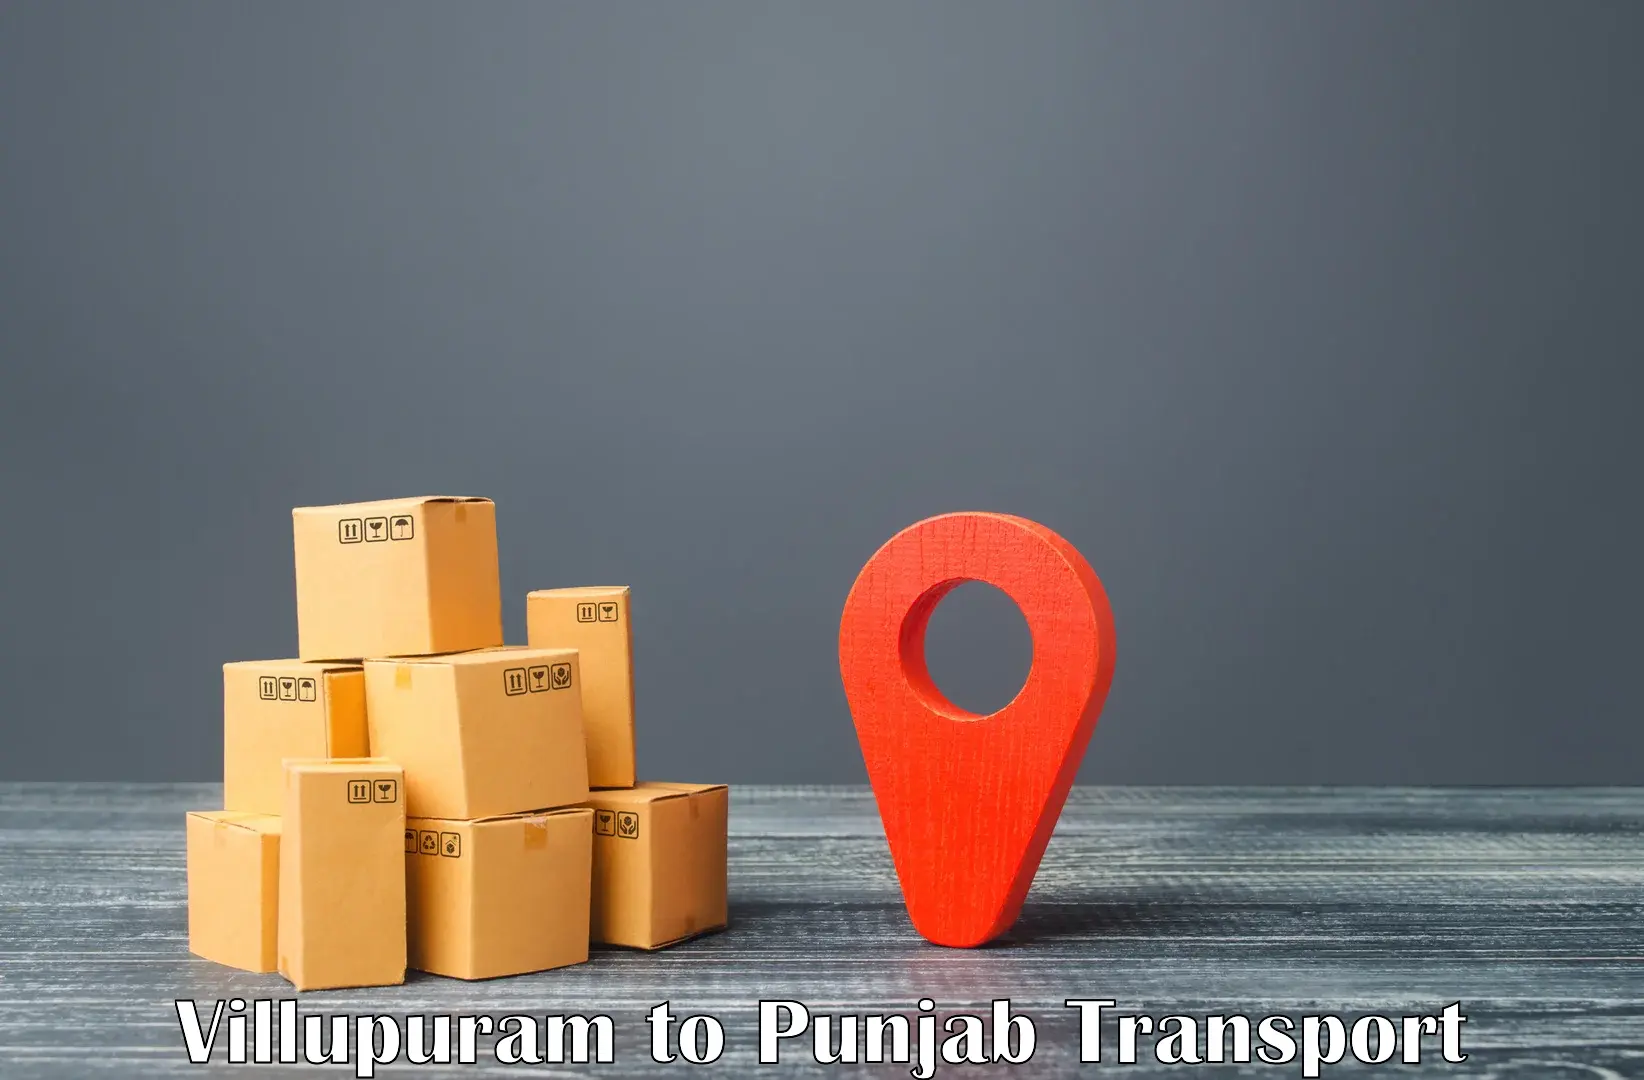 Part load transport service in India Villupuram to Rajpura